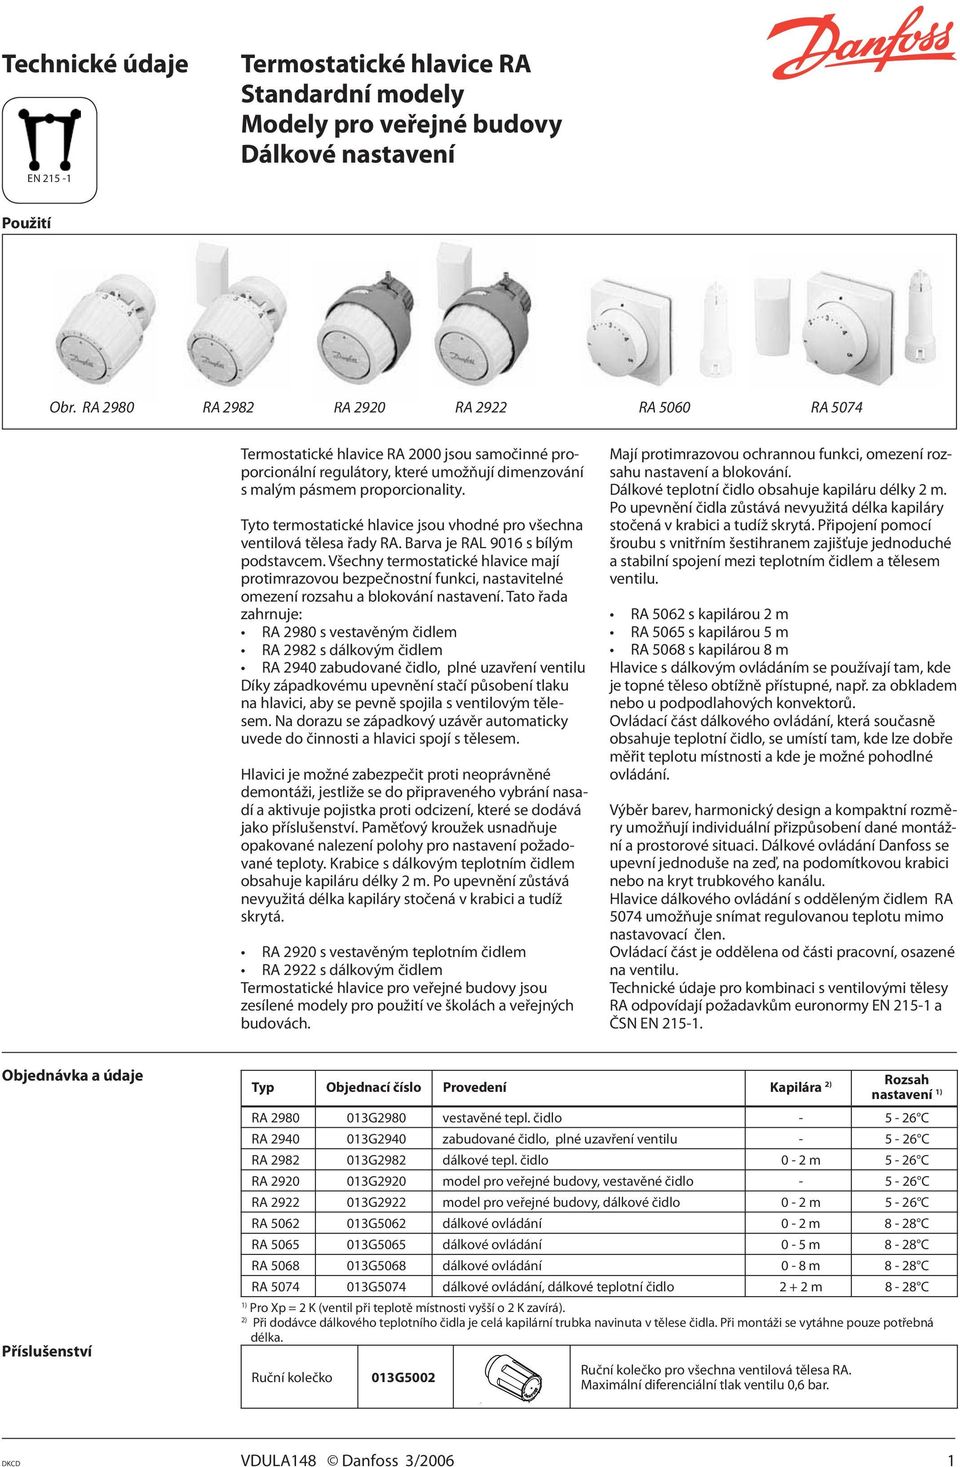 Tyto termostatické hlavice jsou vhodné pro všechna ventilová tělesa řady RA. Barva je RAL 9016 s bílým podstavcem.